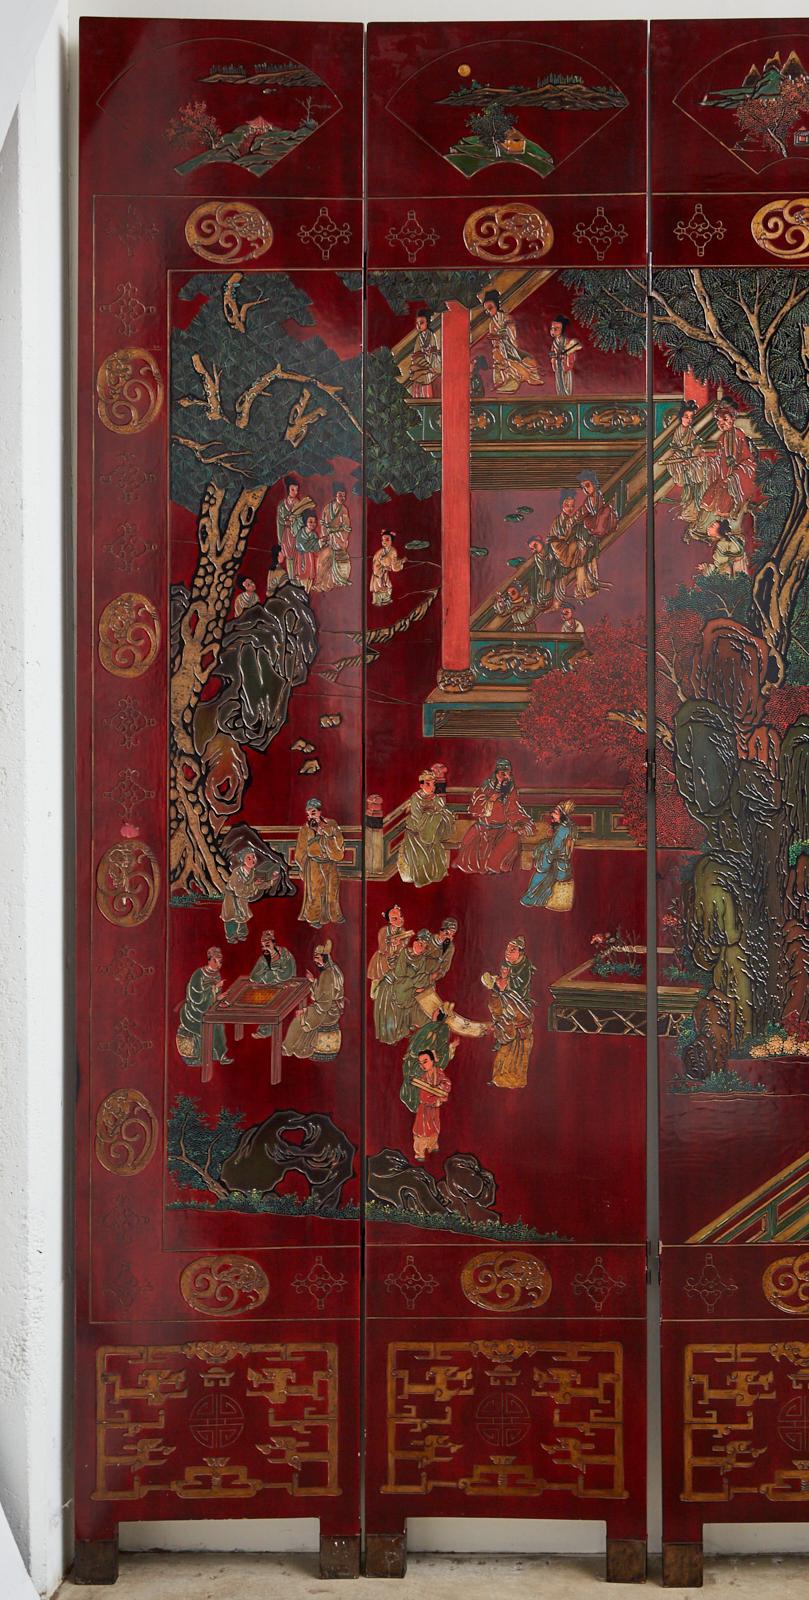 Très impressionnant paravent monumental d'exportation chinoise à douze panneaux de Coromandel représentant une cour luxuriante avec des personnages impliqués dans des activités de loisir. Les panneaux sont incisés et laqués avec des couleurs